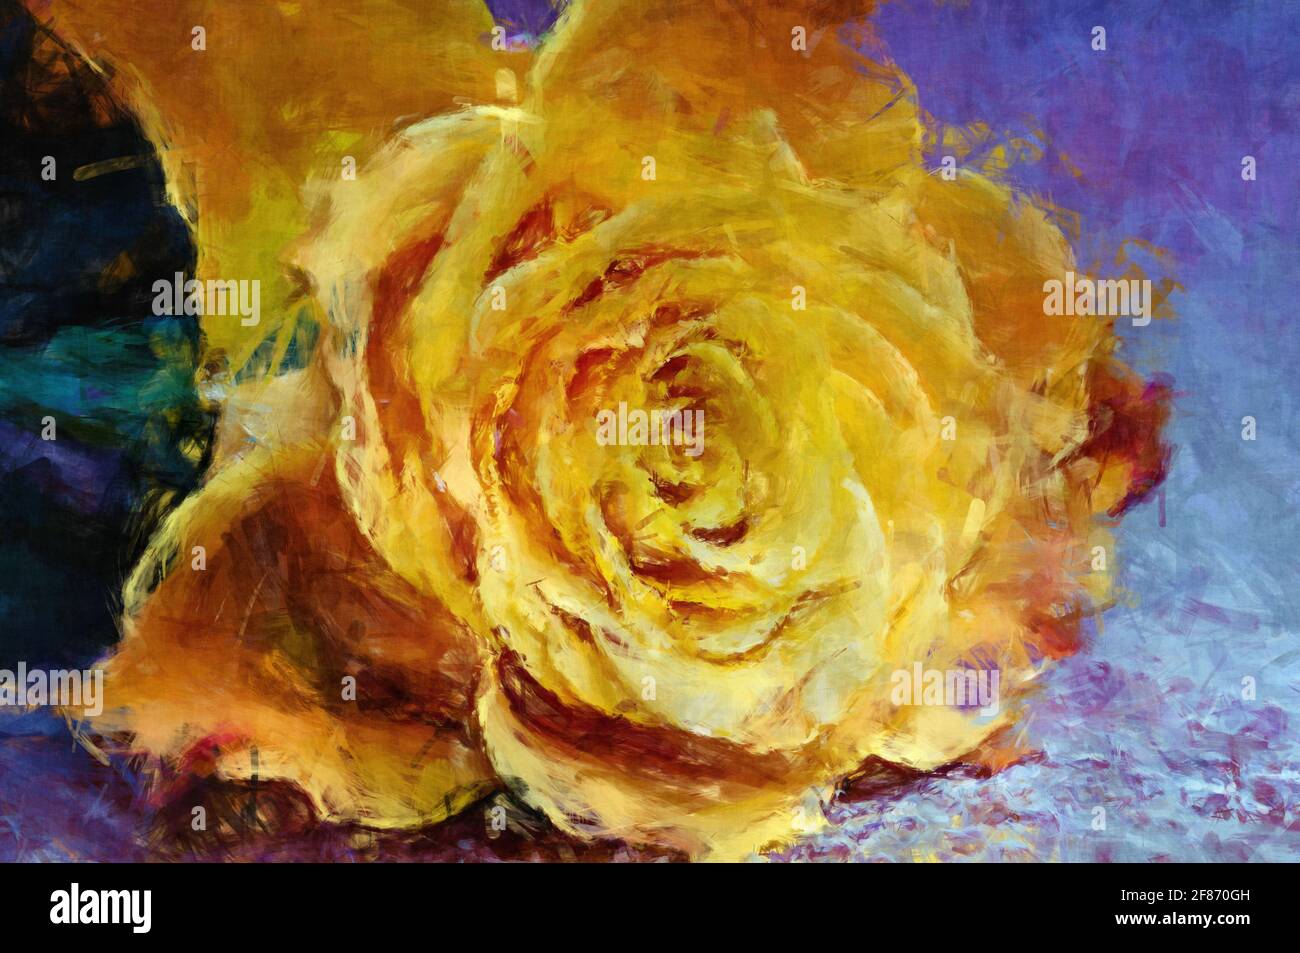 Blüten mit malerischer Wirkung Stockfoto